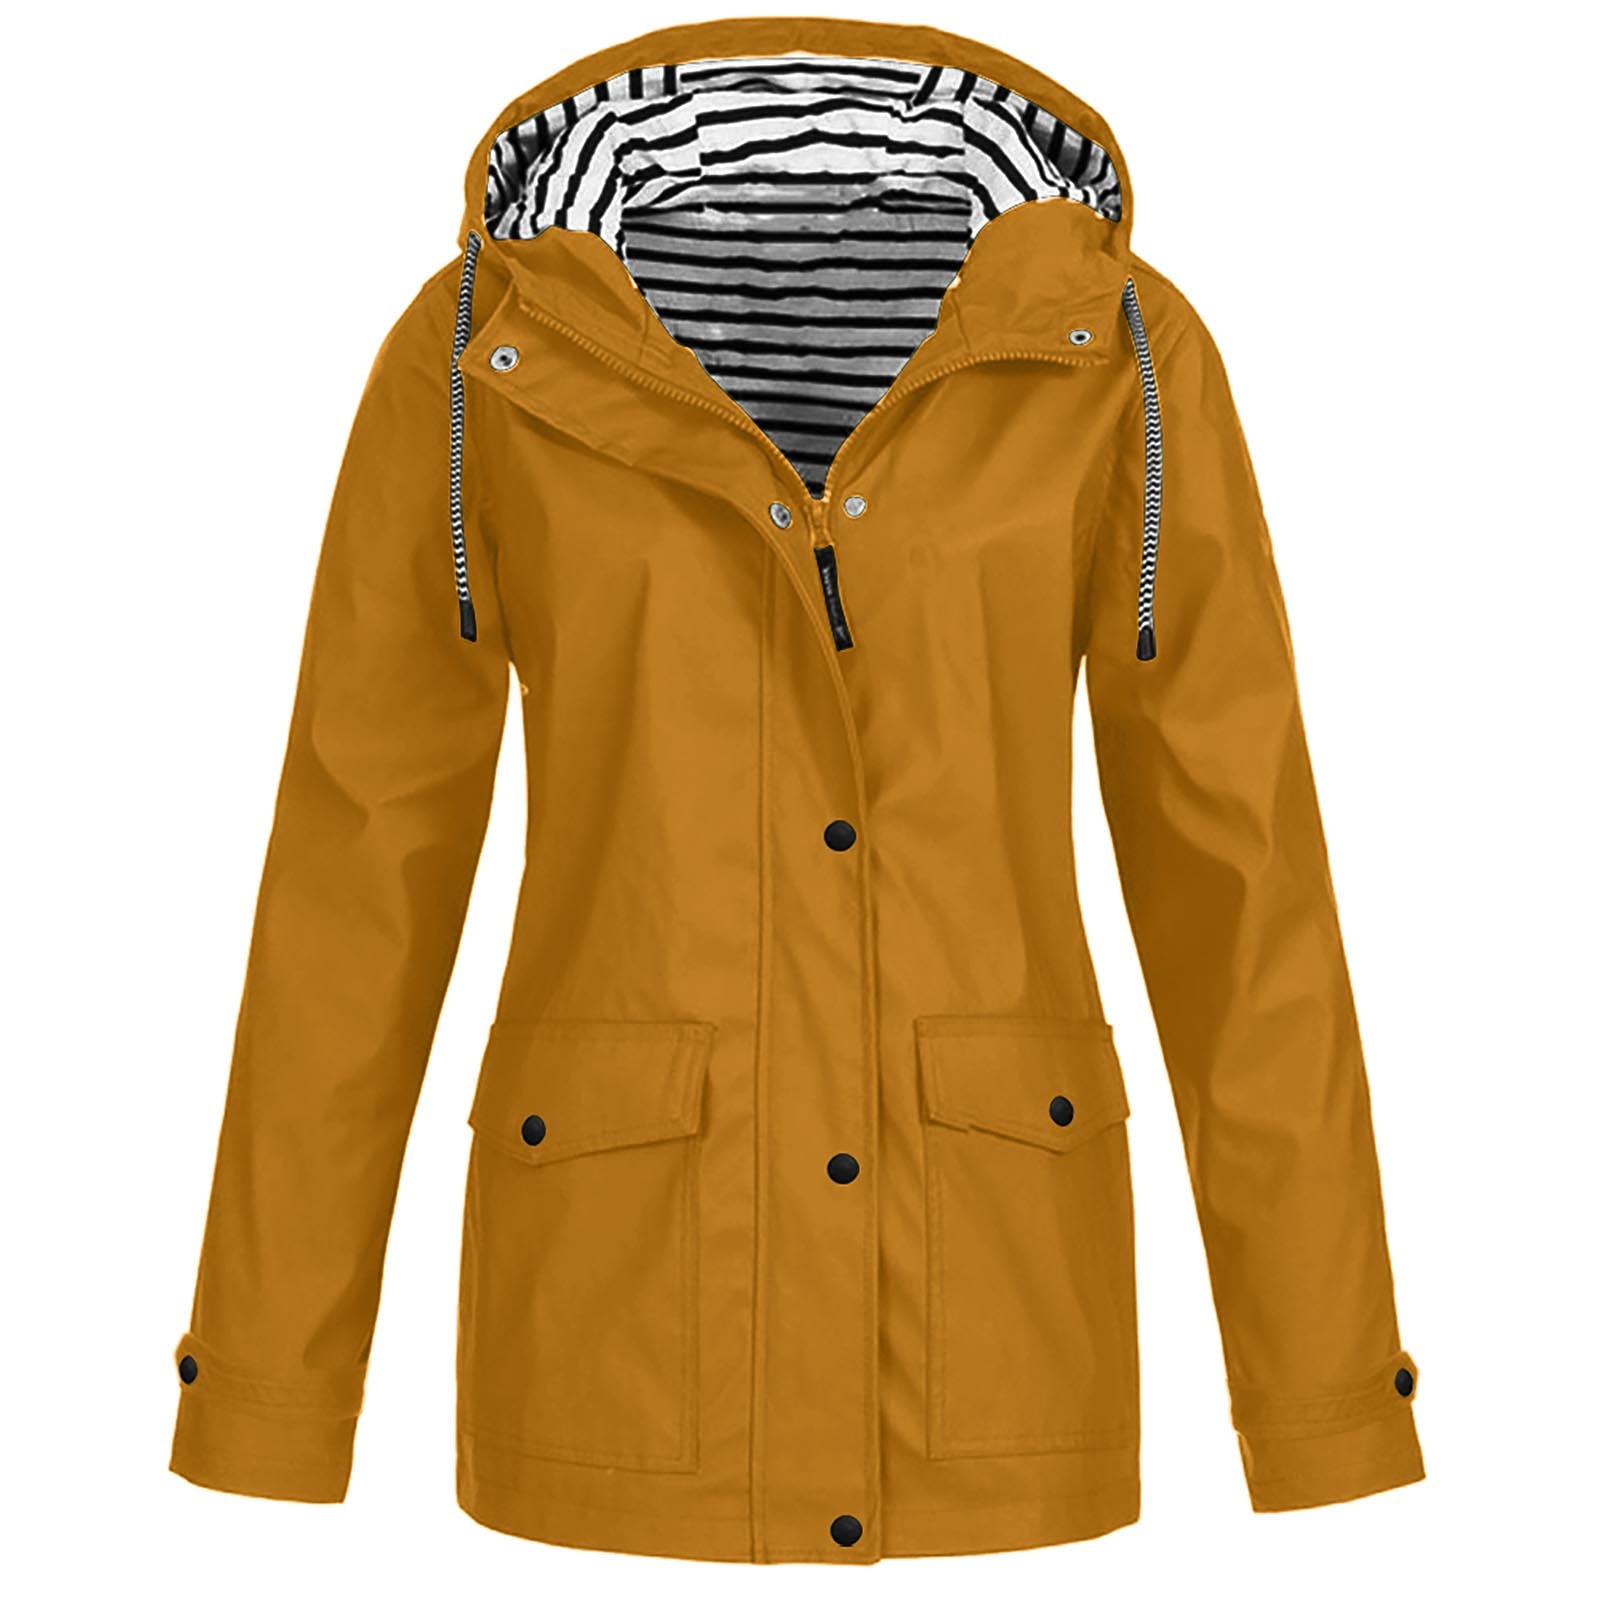 TANGNADE Plus Jacket Outdoor Windproof Hooded Solid Women Coat Rain ...